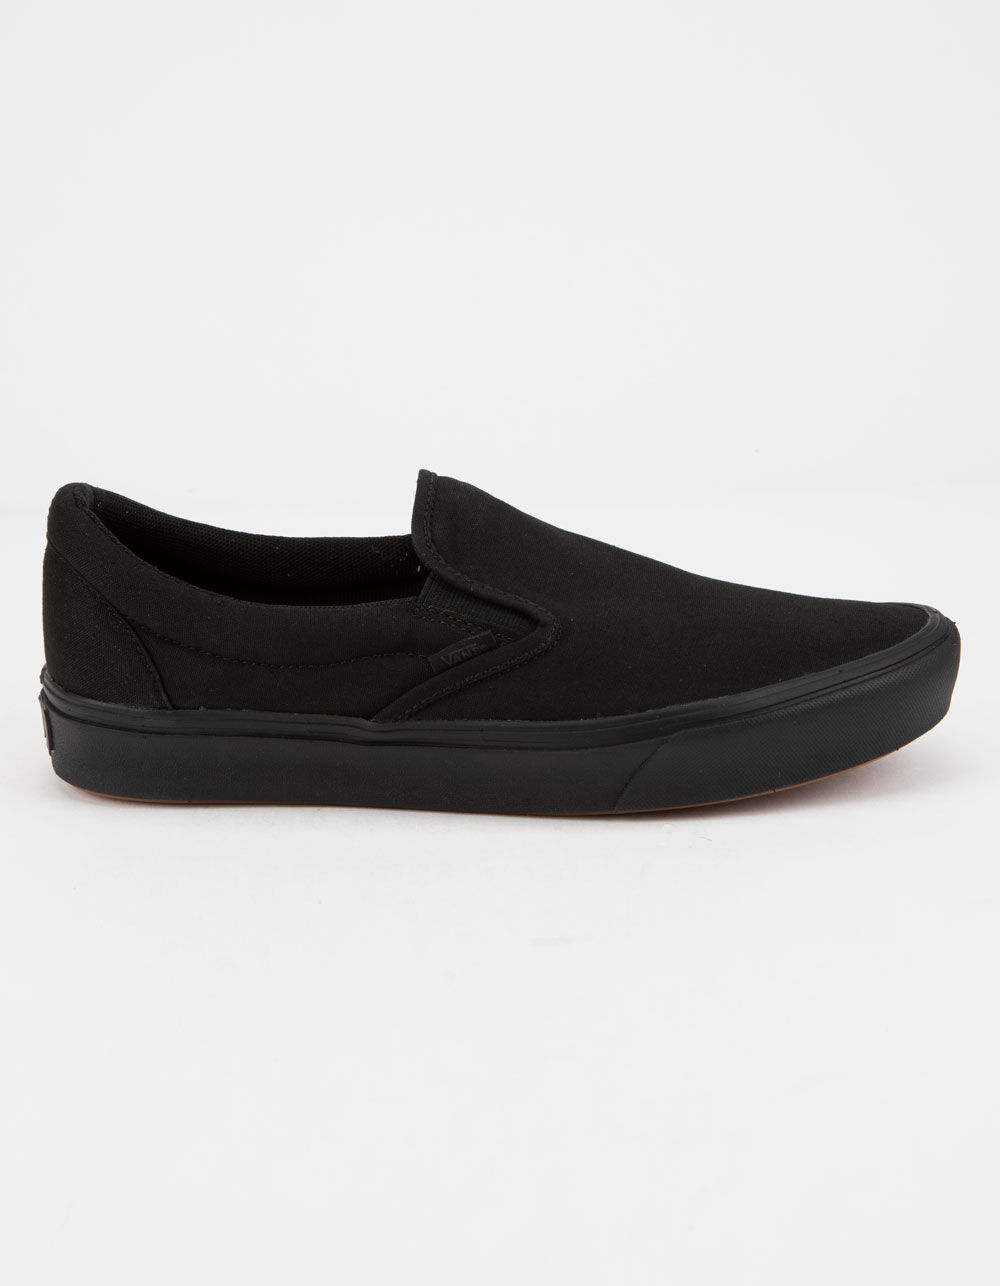 VANS ComfyCush Slip-On Black Shoes - BLACK/BLACK | Tillys